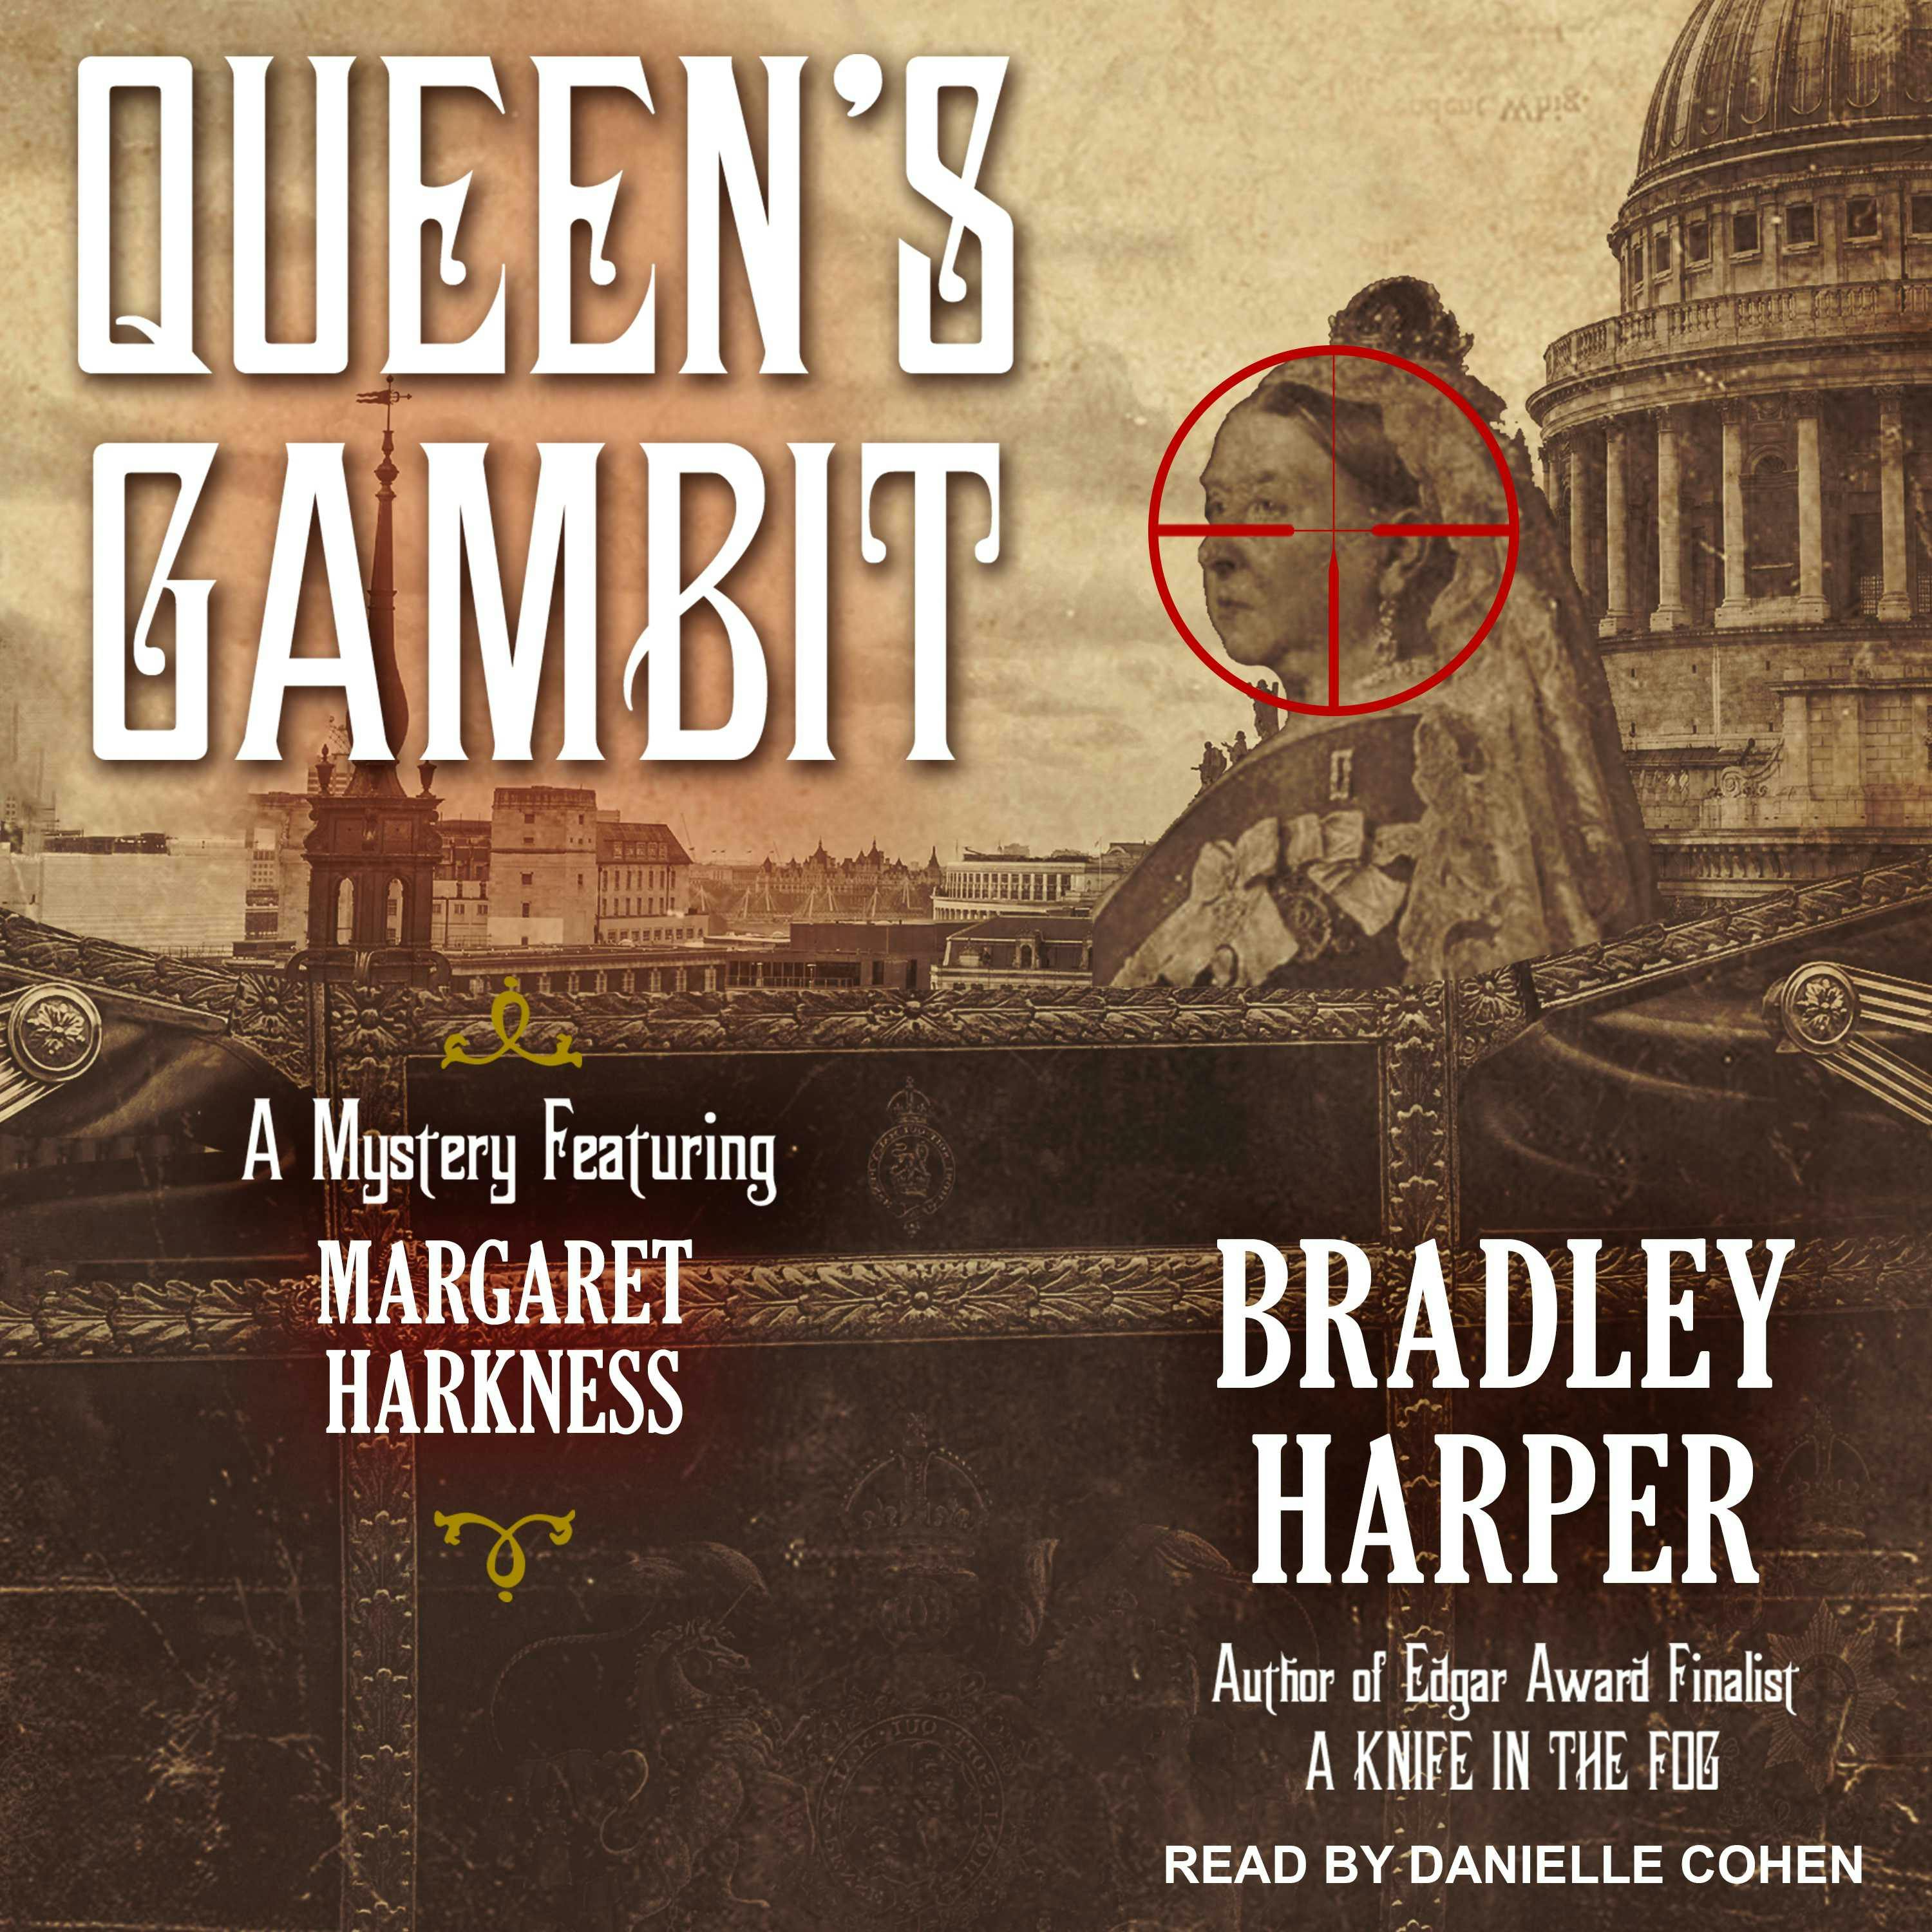 Queen's Gambit: A Mystery Featuring Margaret Harkness - Bradley Harper